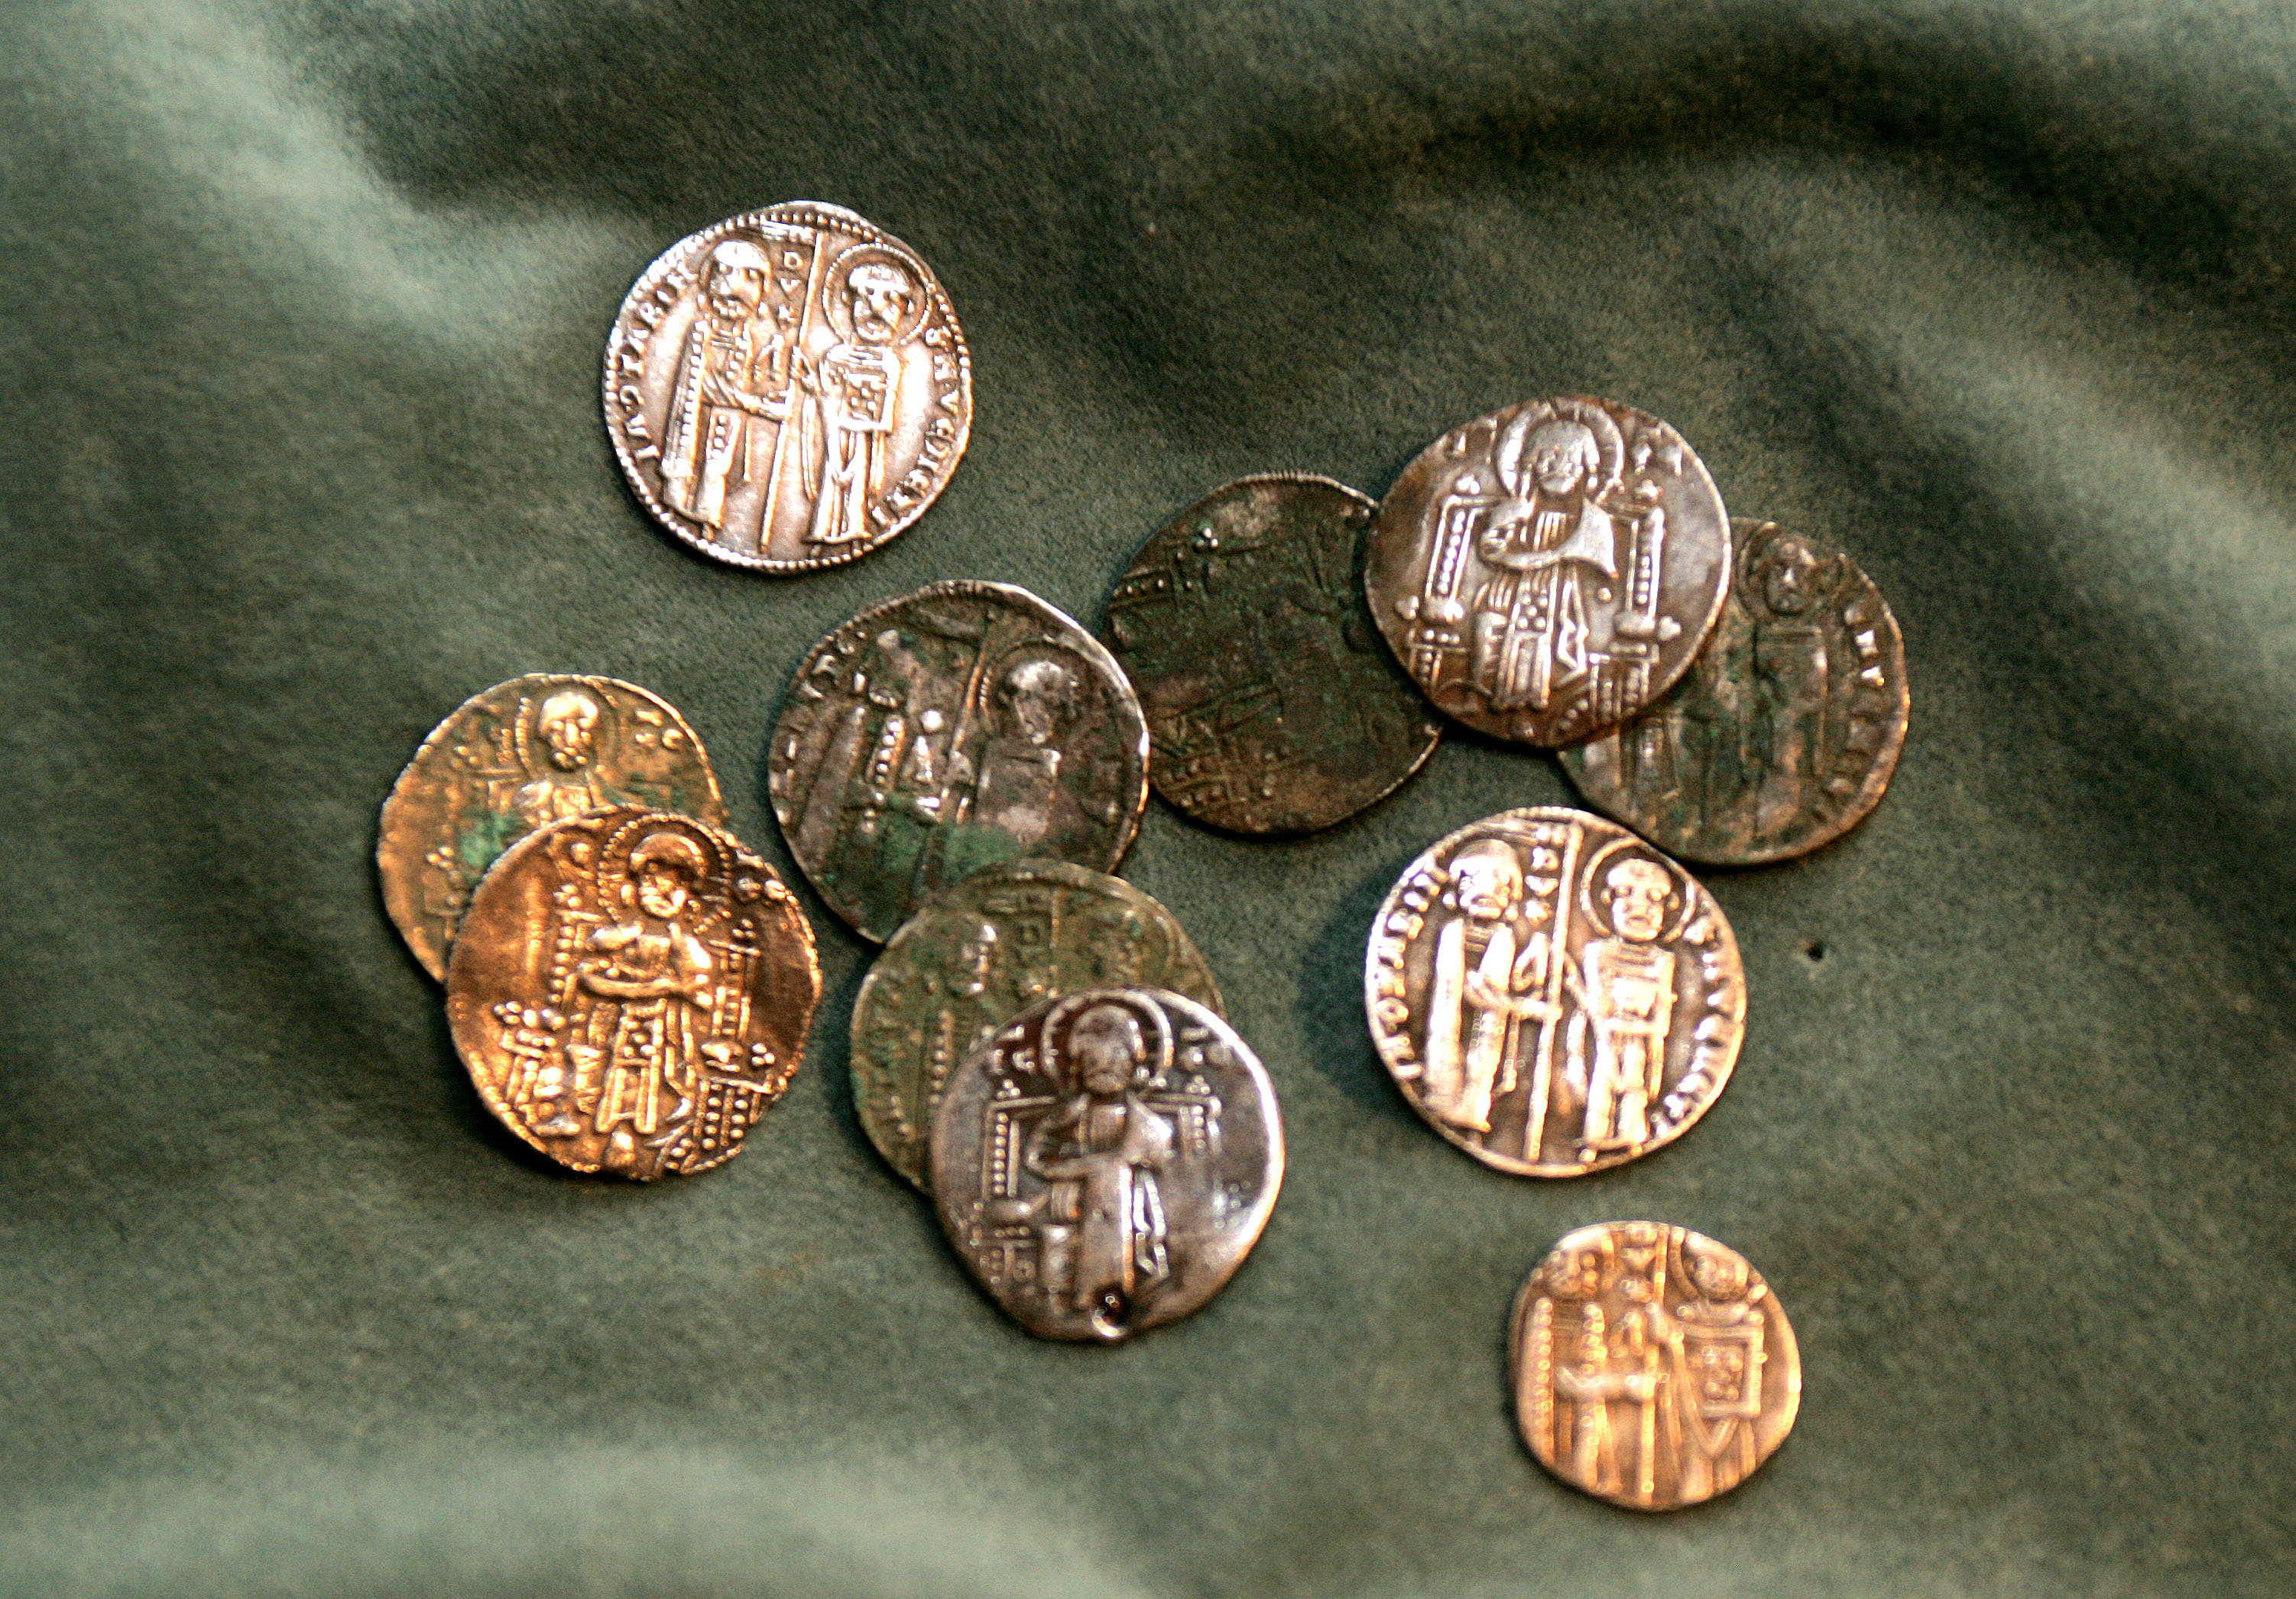 Αρχαιότητες σε κοσμηματοπωλεία της Πτοελμαΐδας εντόπισε το ΣΔΟΕ